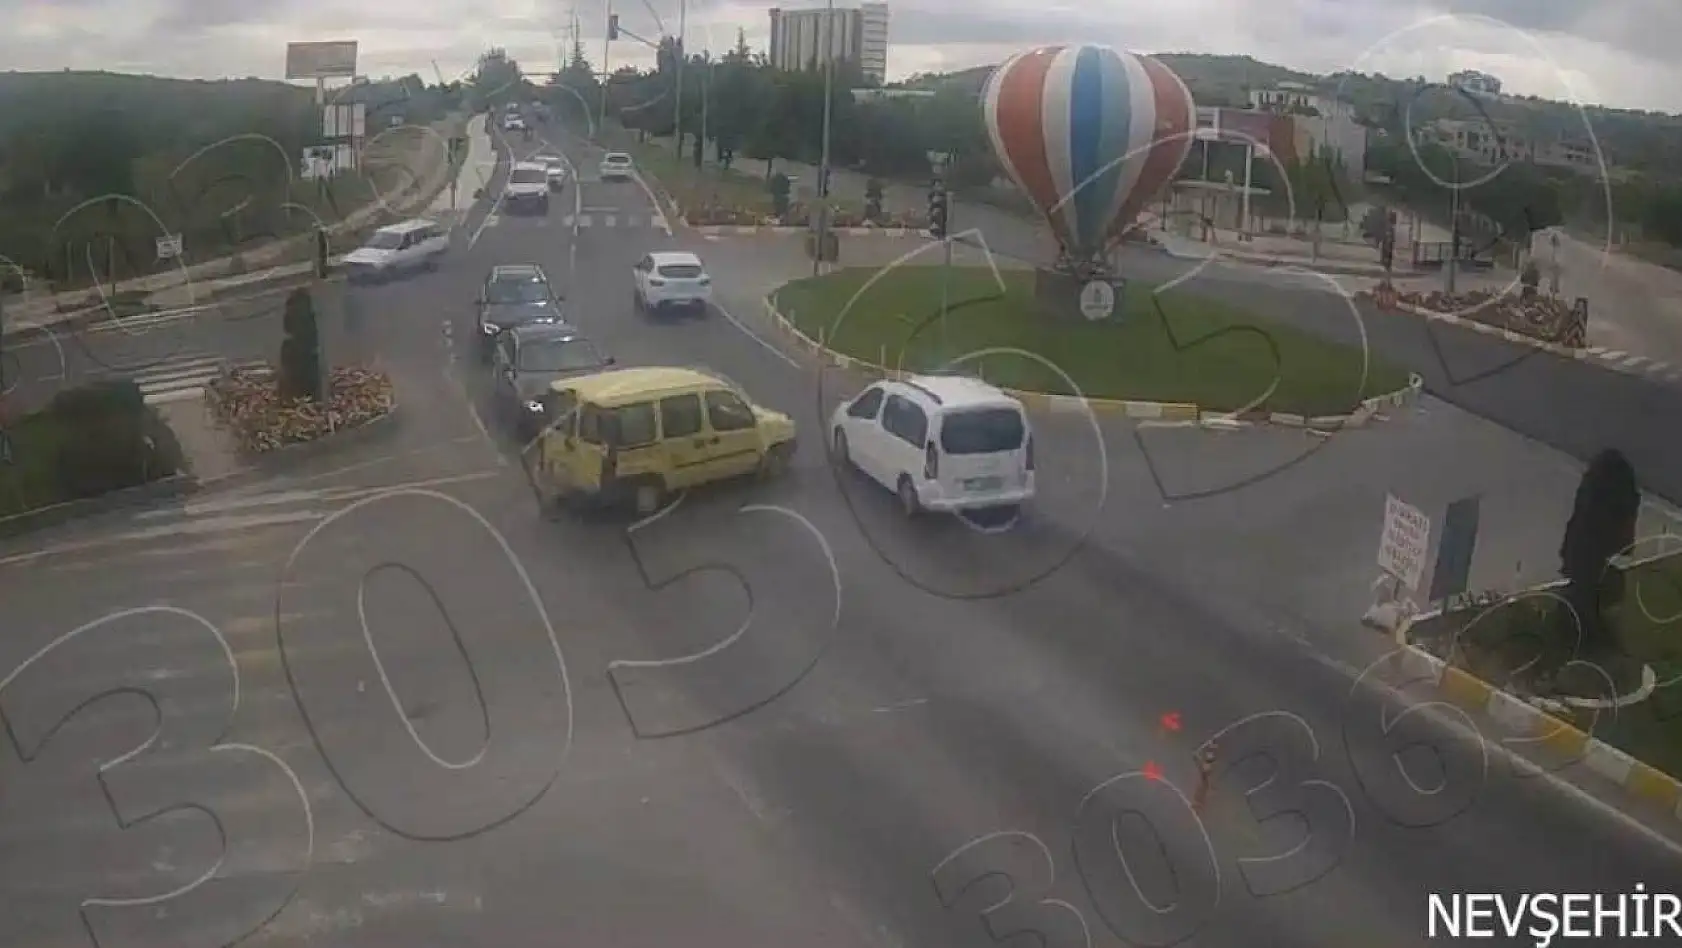 Nevşehir'de dikkatsiz sürücüler kazalara neden oldu